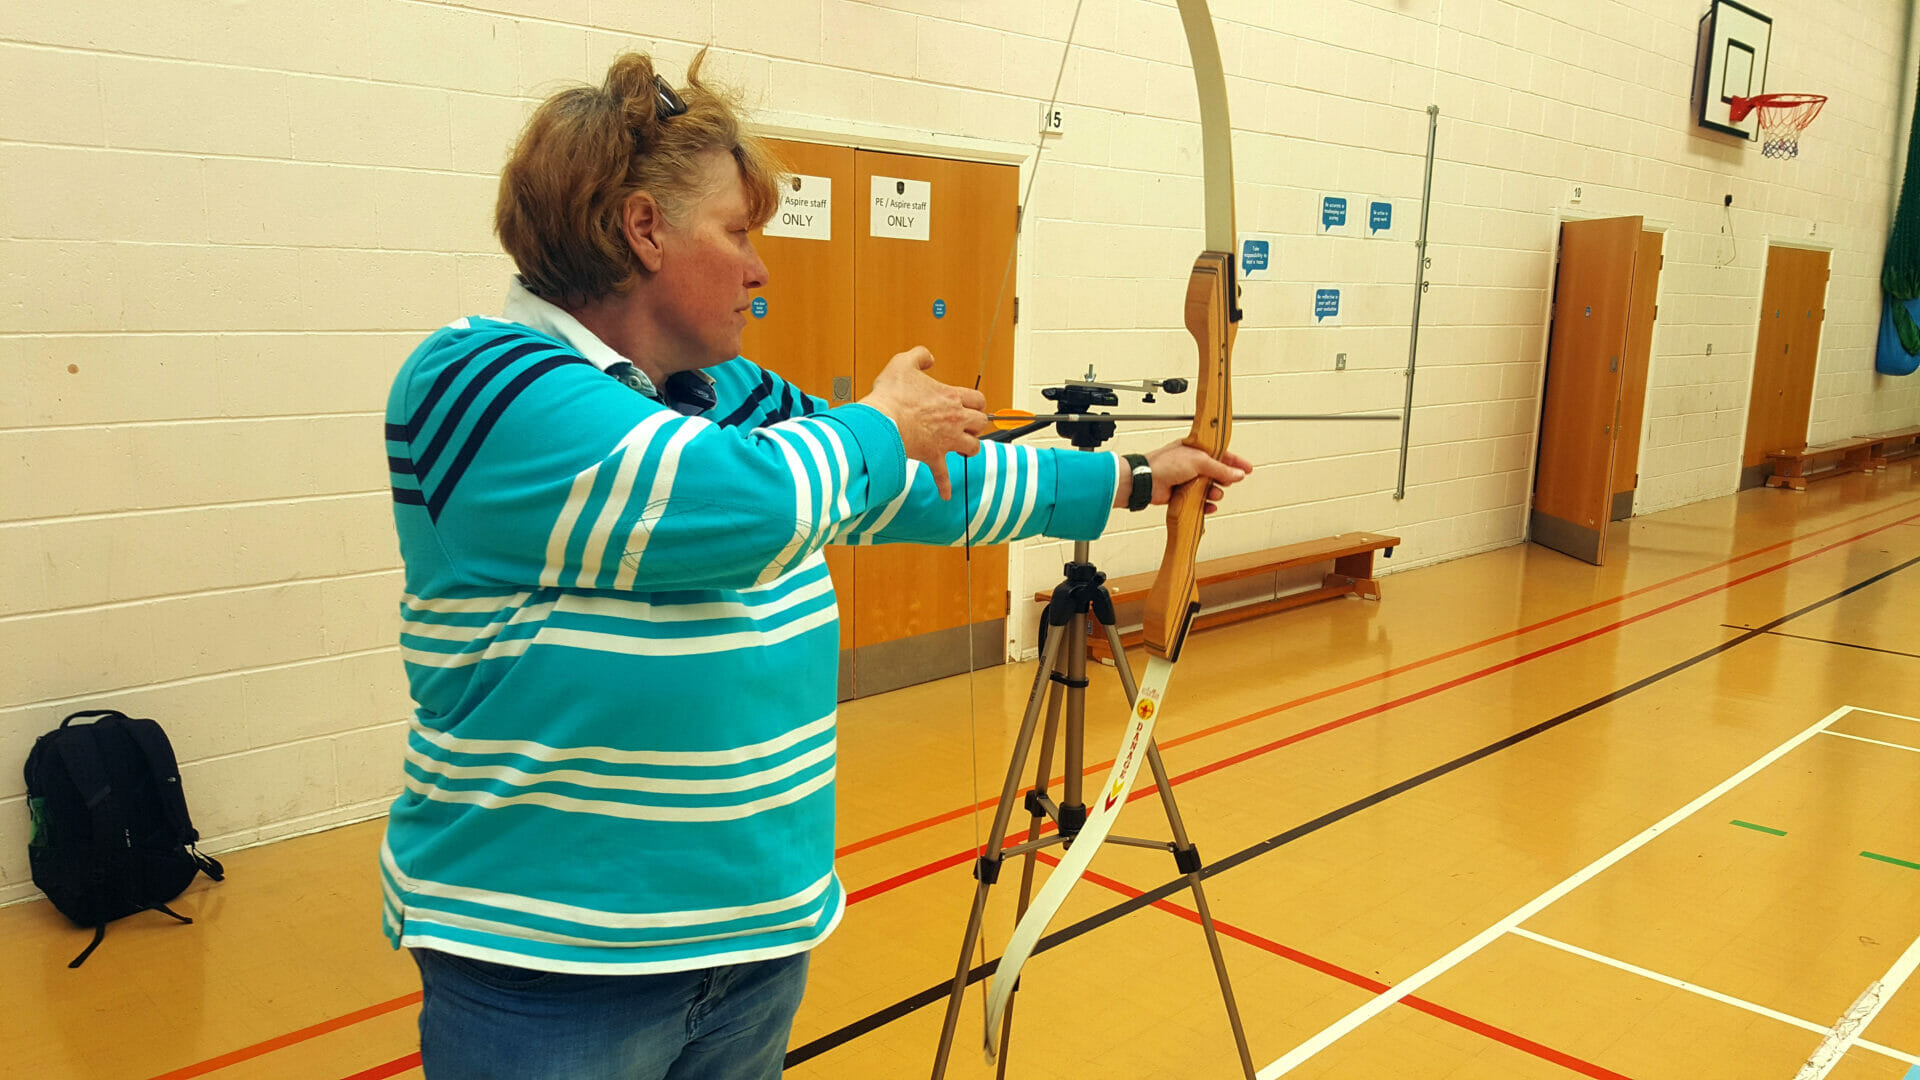 woman playing archery